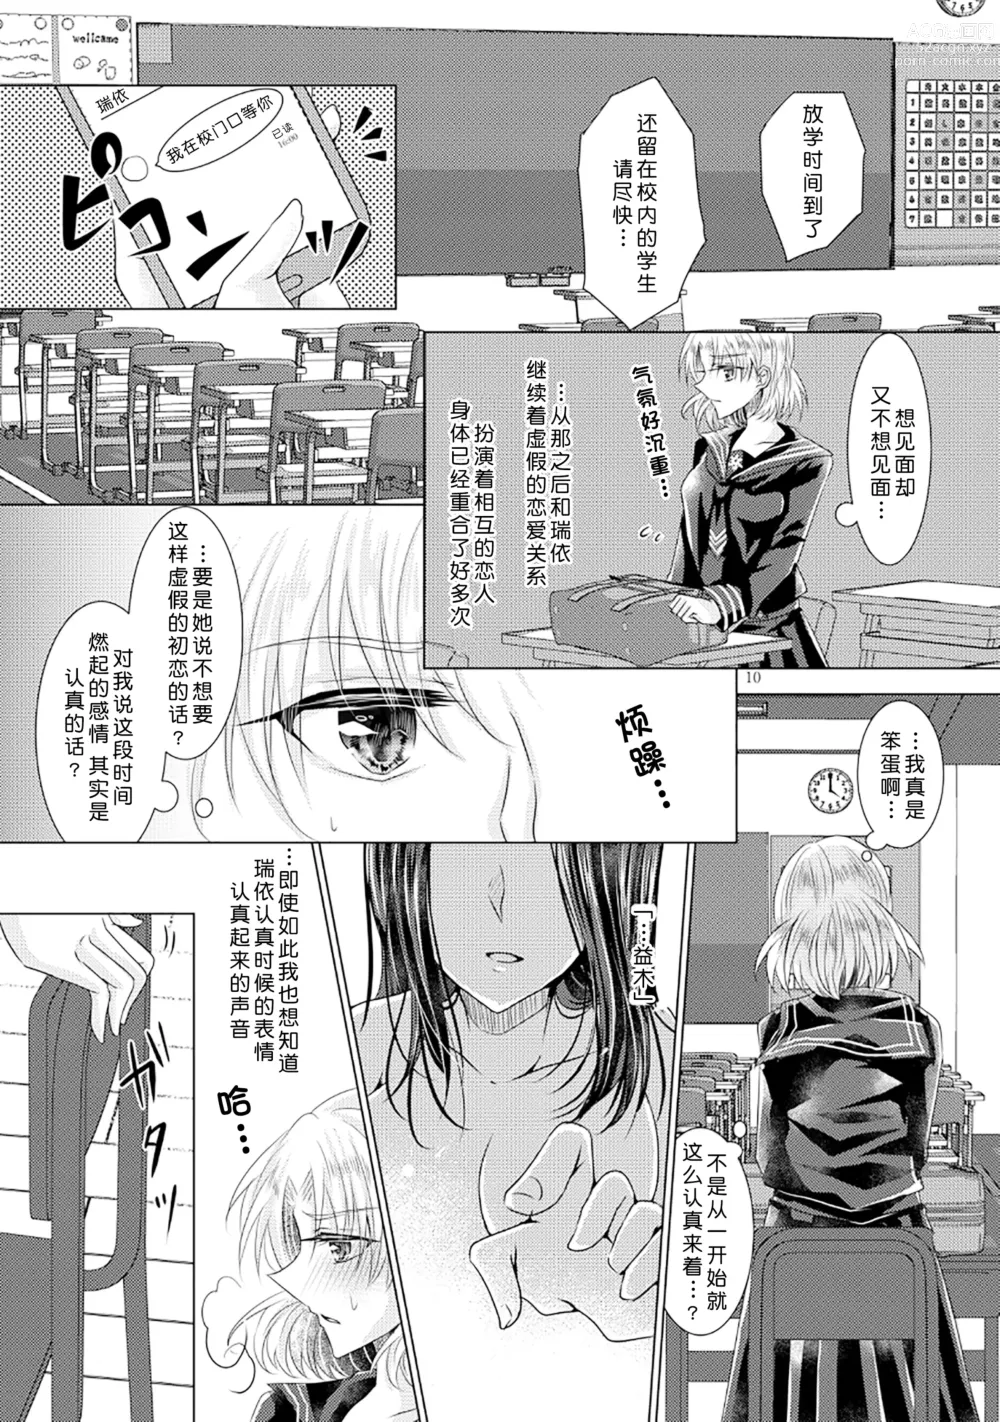 Page 9 of doujinshi 倒错罗曼司